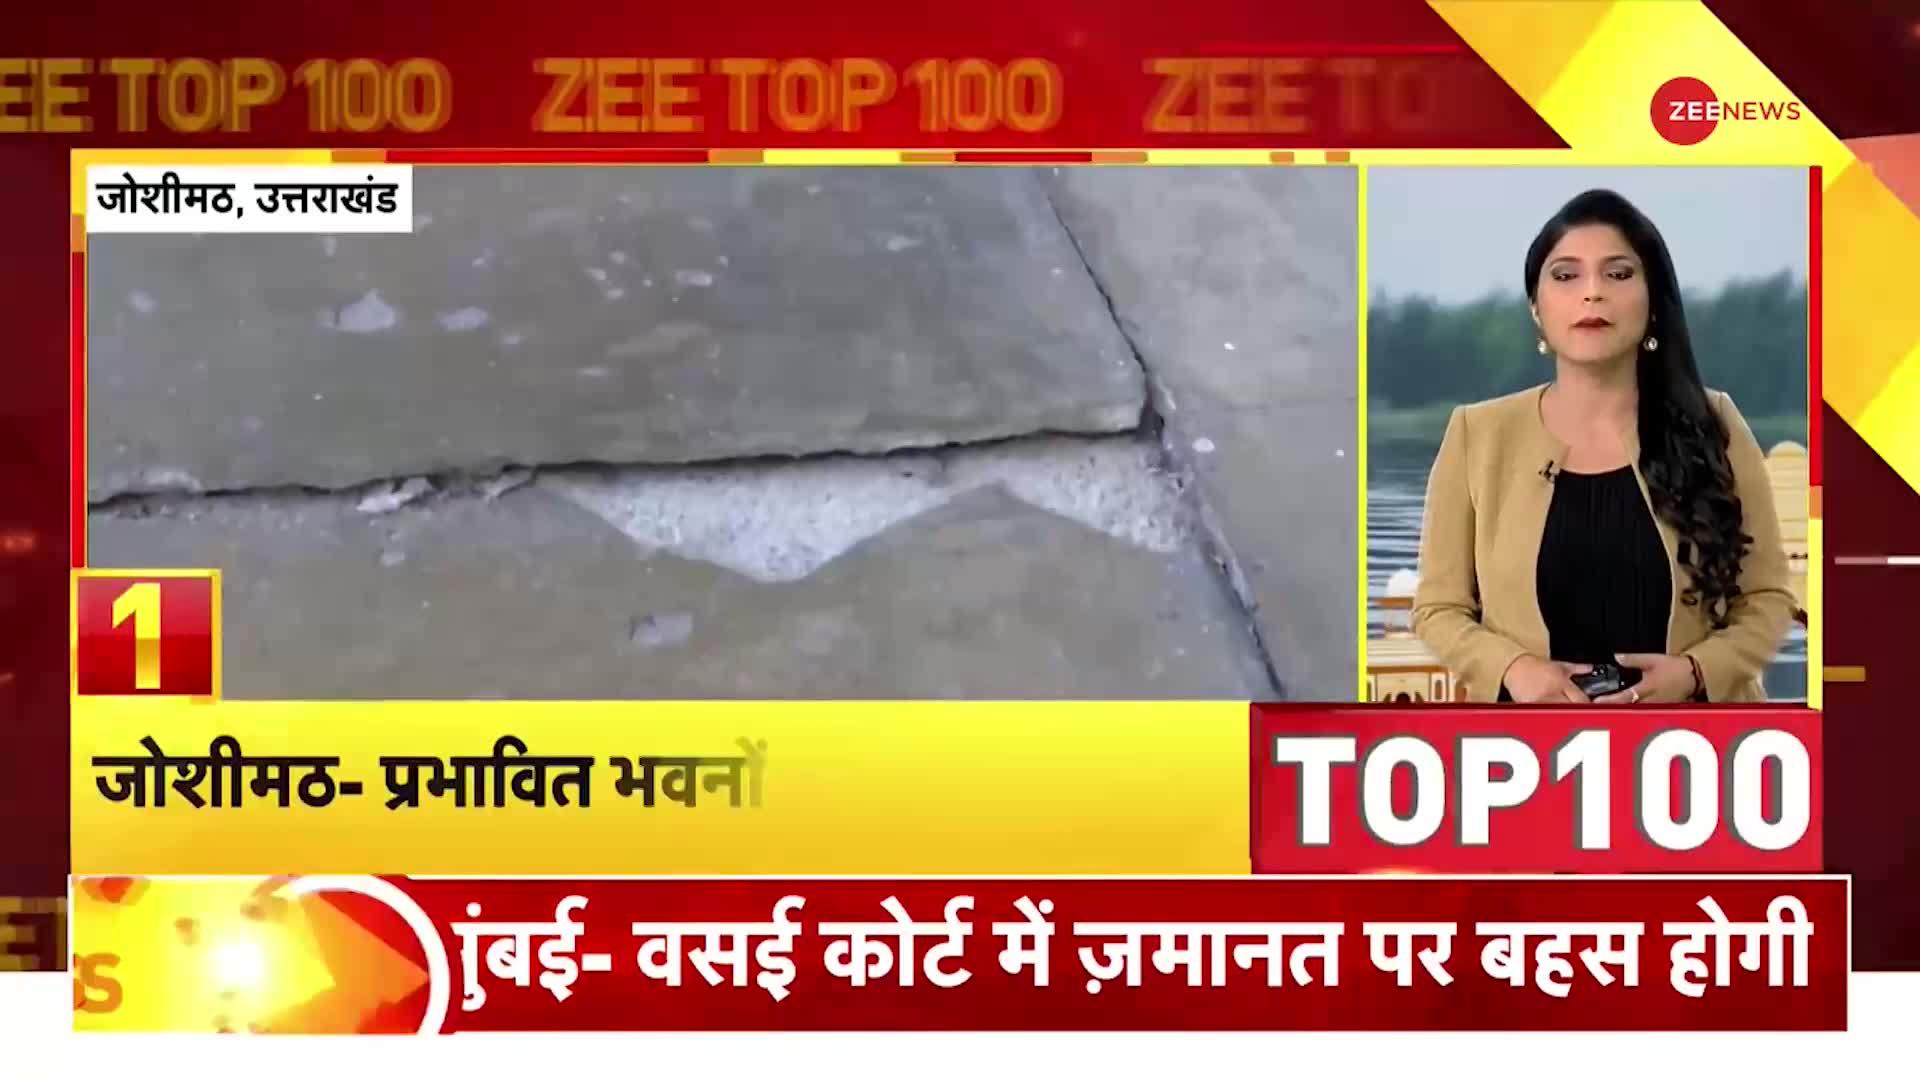 ZEE TOP 100: Joshimath में प्रभावित भवनों पर नहीं चलेगा बुलडोज़र, ड्रिल की मदद से गिराया जाएगा